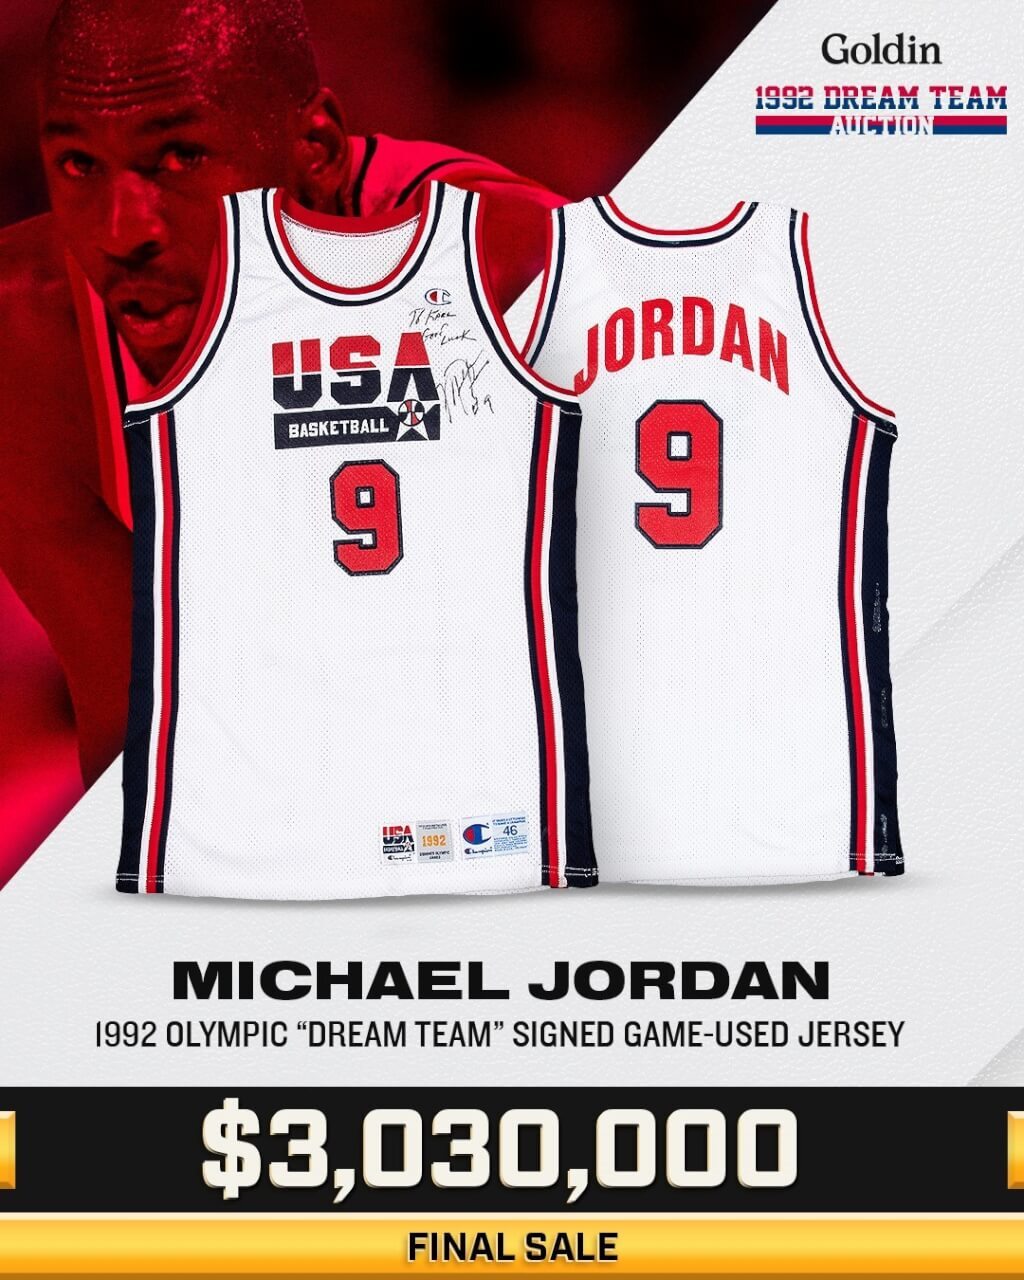 喬丹1992年奧運美國夢幻隊球衣 9300萬售出